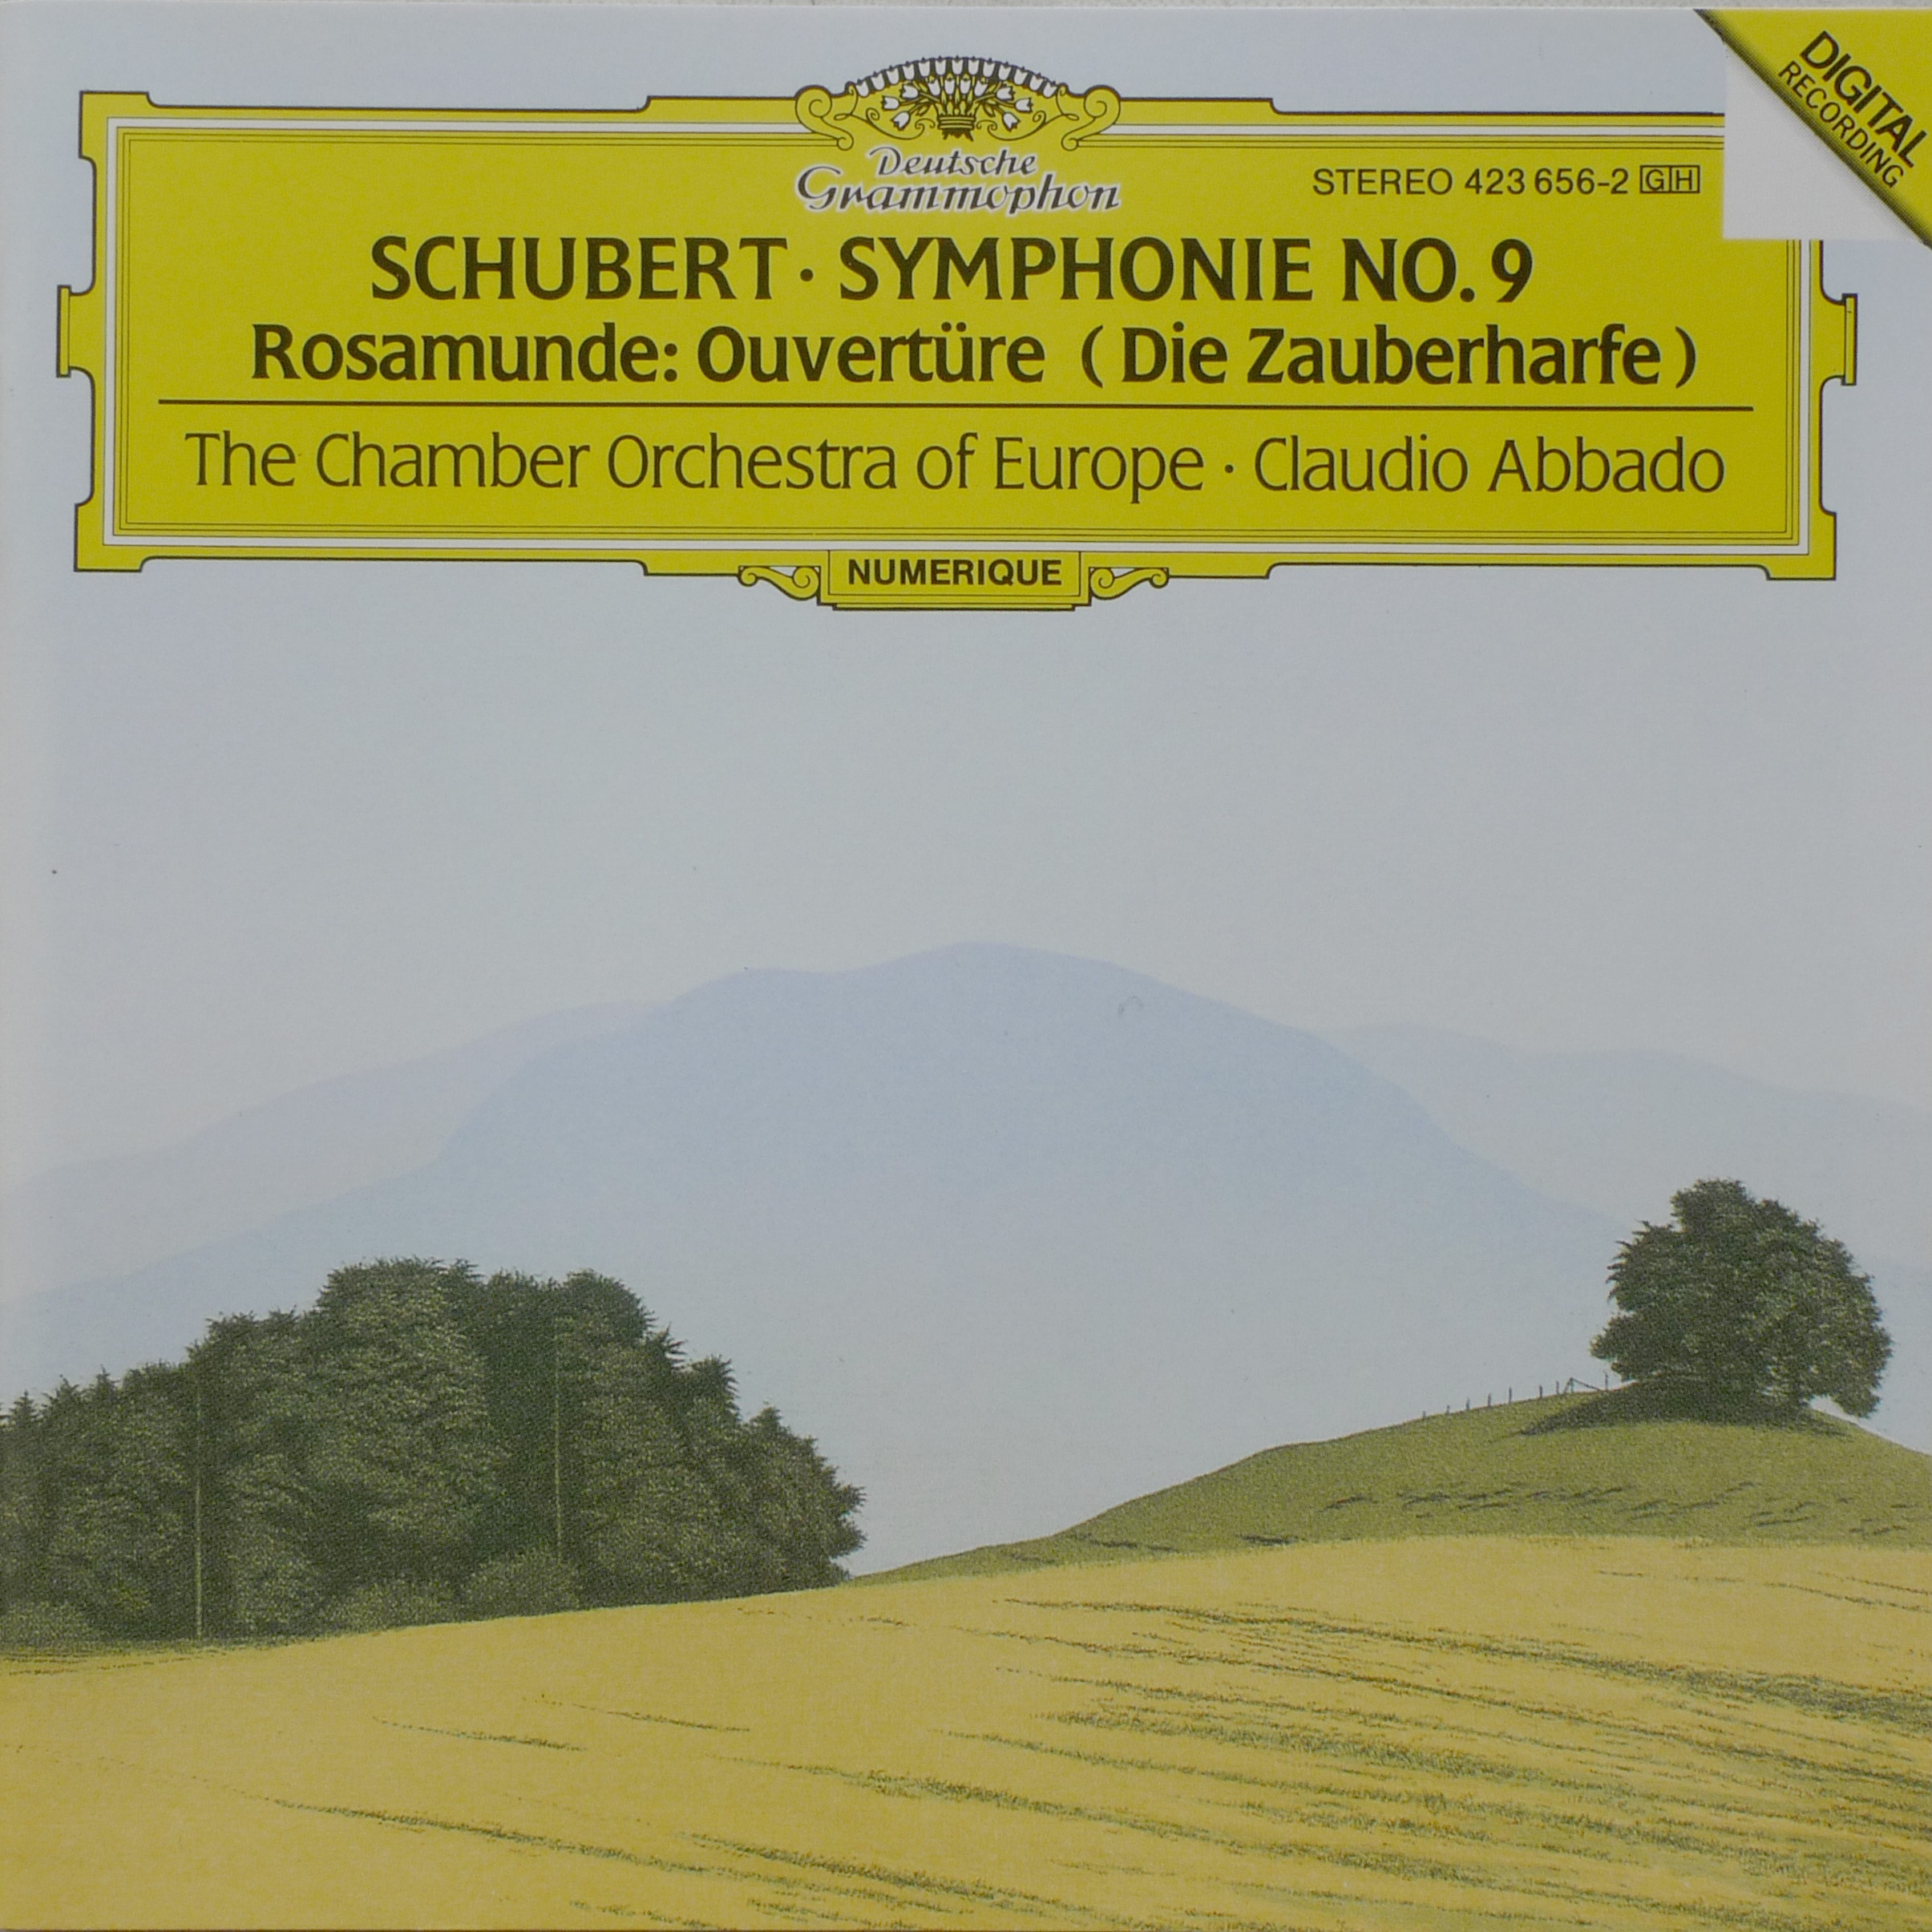 Schubert: Symphony No.9 & Rosamunde Overture